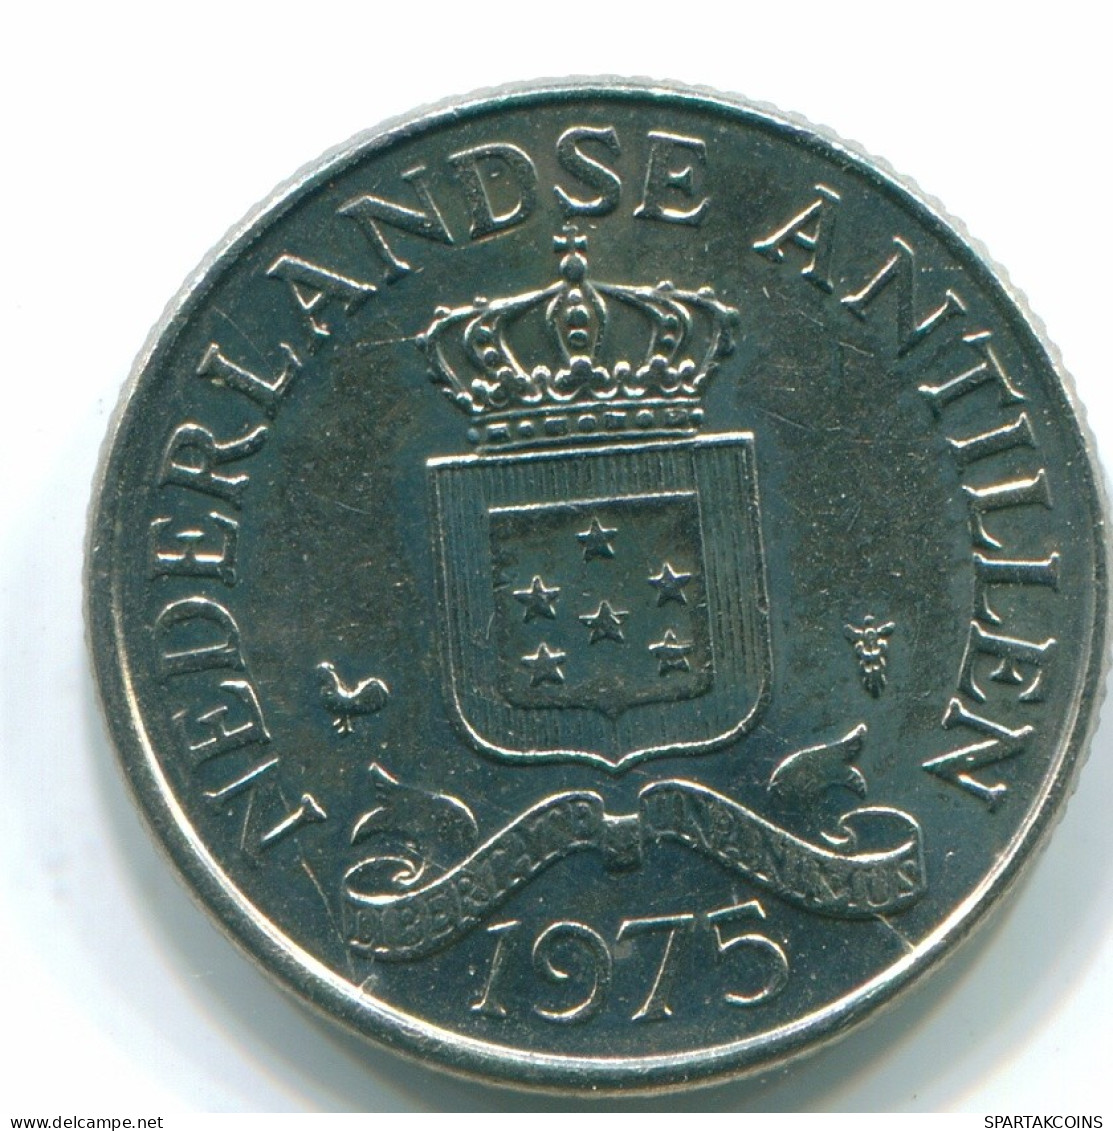 25 CENTS 1975 NIEDERLÄNDISCHE ANTILLEN Nickel Koloniale Münze #S11610.D.A - Antilles Néerlandaises